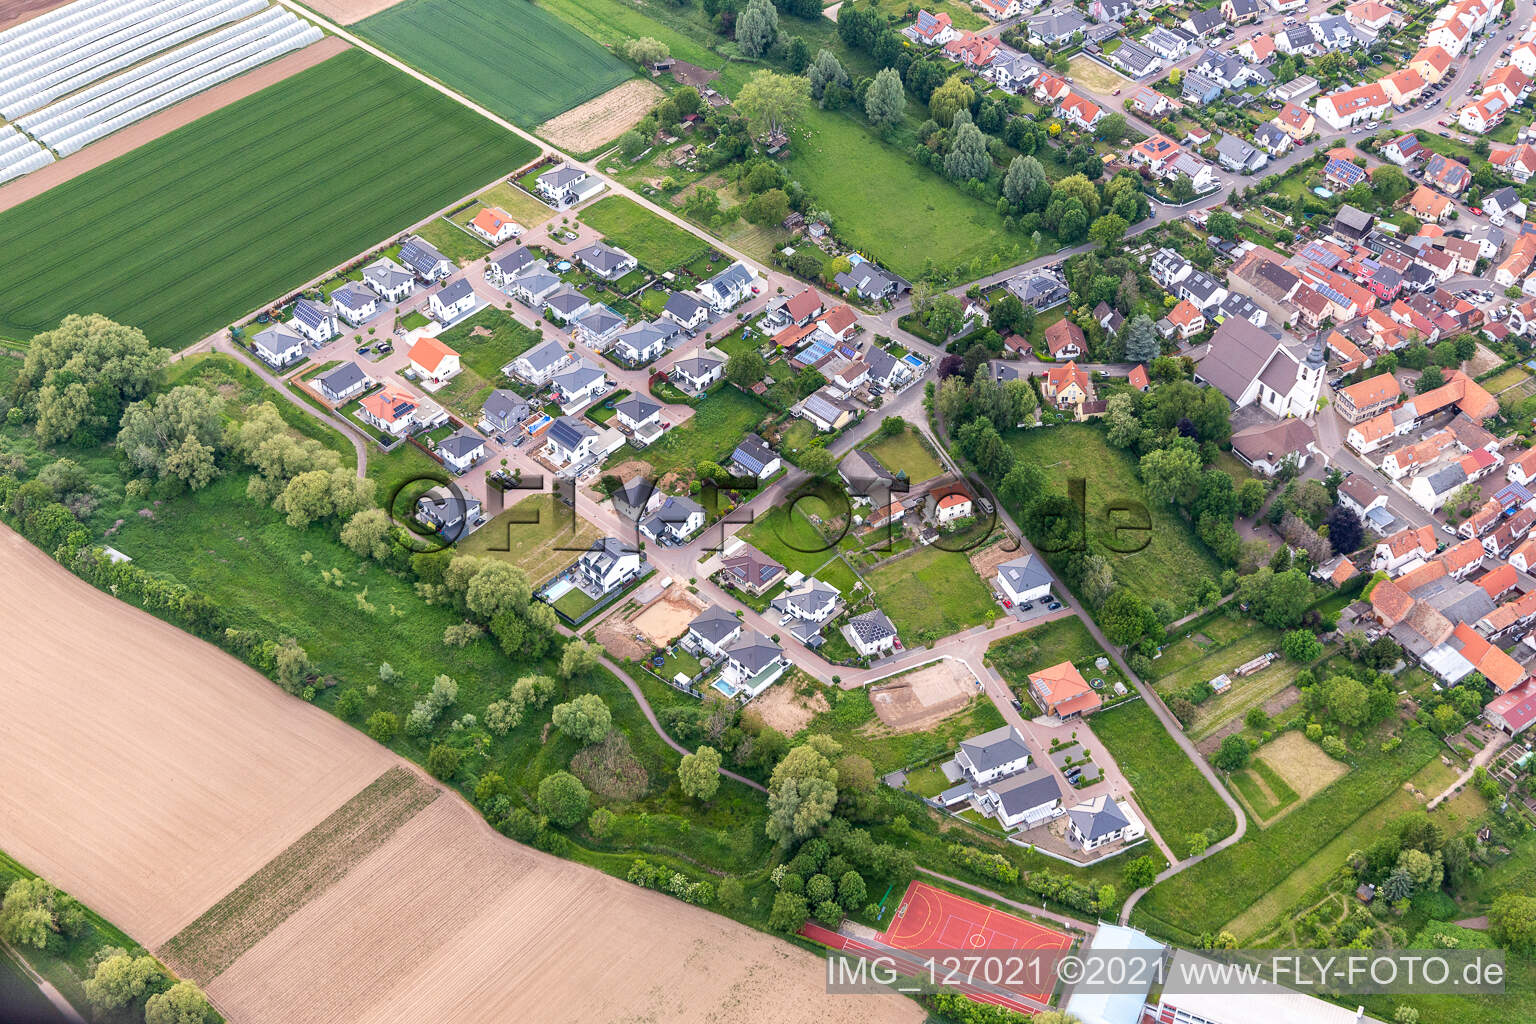 Vue aérienne de Dans les cent acres à Offenbach an der Queich dans le département Rhénanie-Palatinat, Allemagne